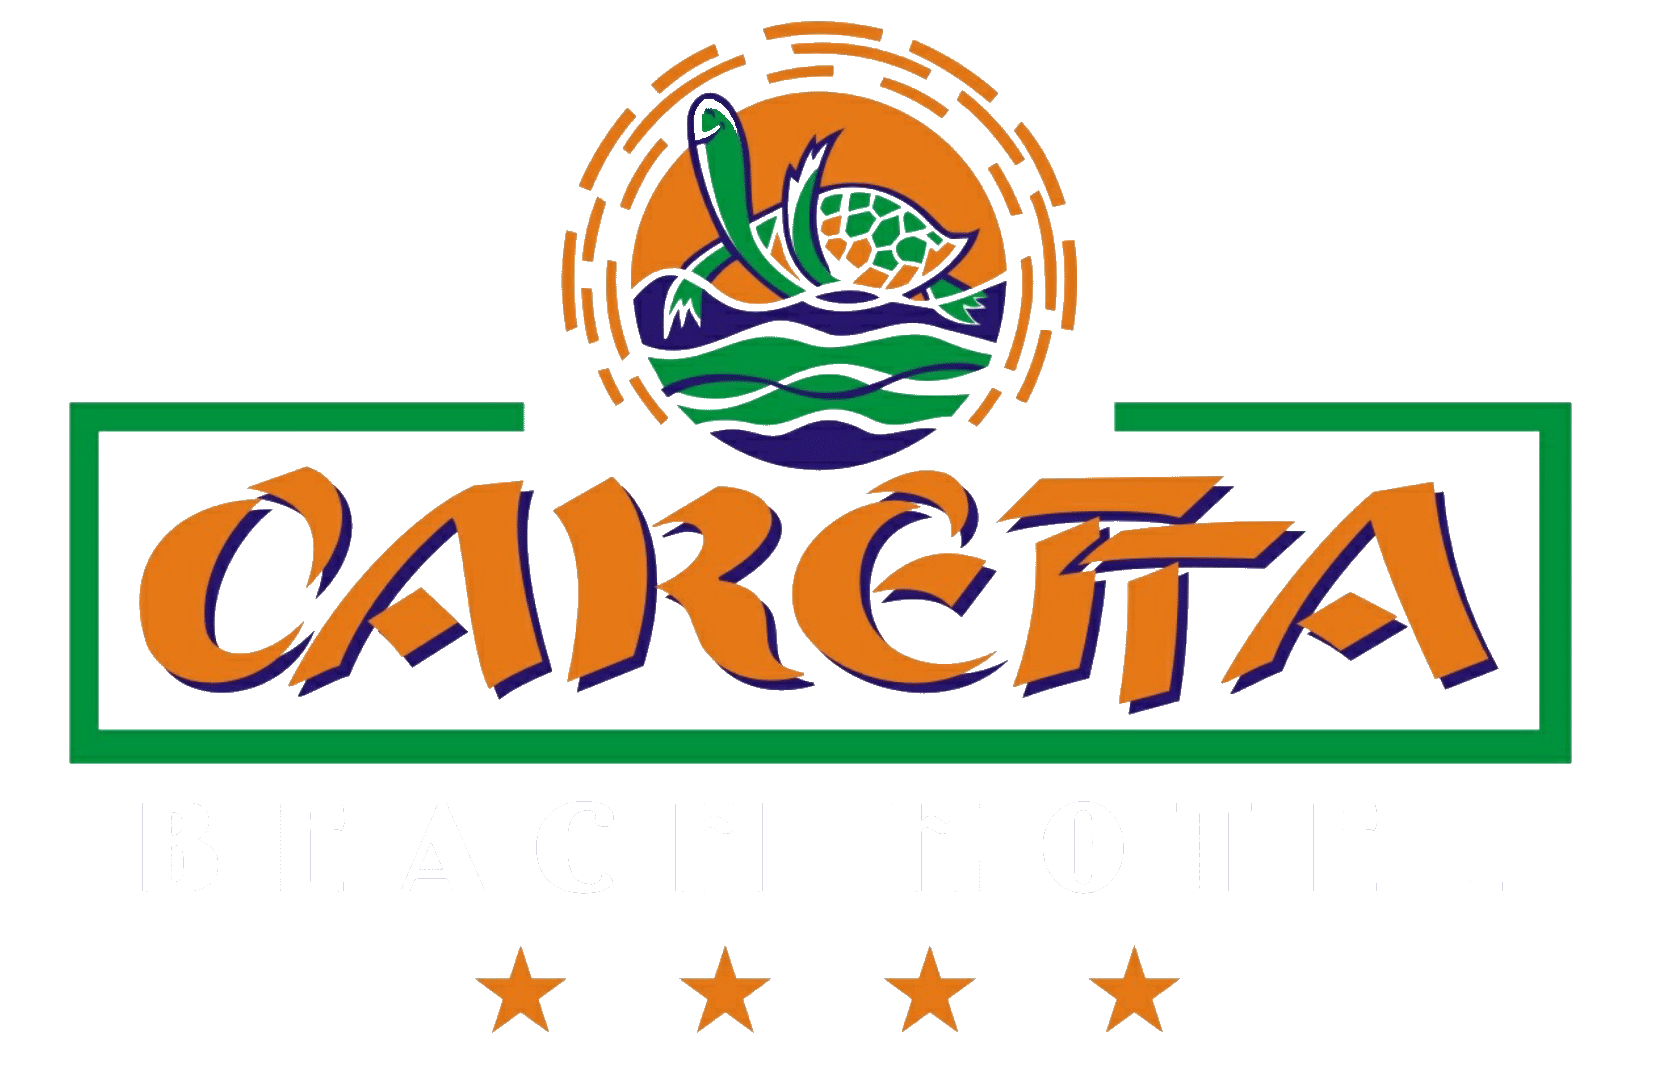 CARETTA BEACH HOTEL